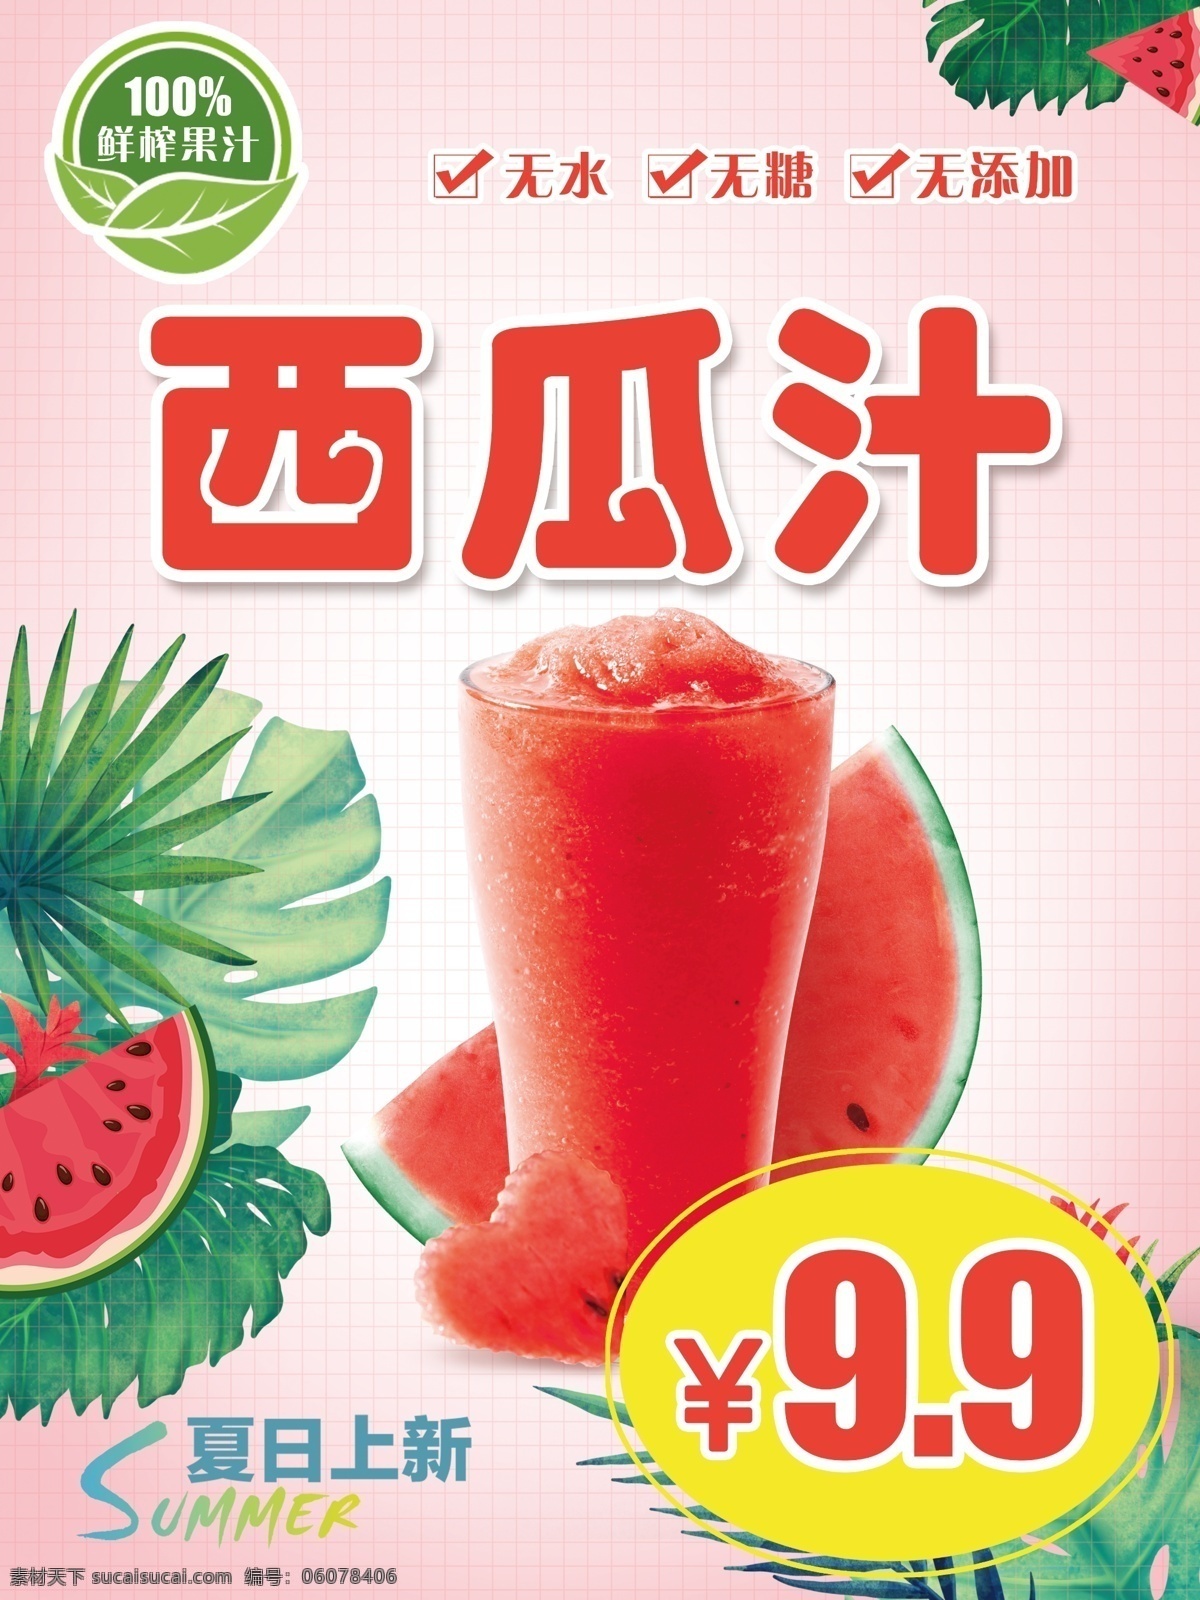 西瓜 果汁 夏日 水果 现榨果汁 现榨西瓜汁 鲜榨西瓜汁 鲜榨 鲜榨果汁 海报 宣传单